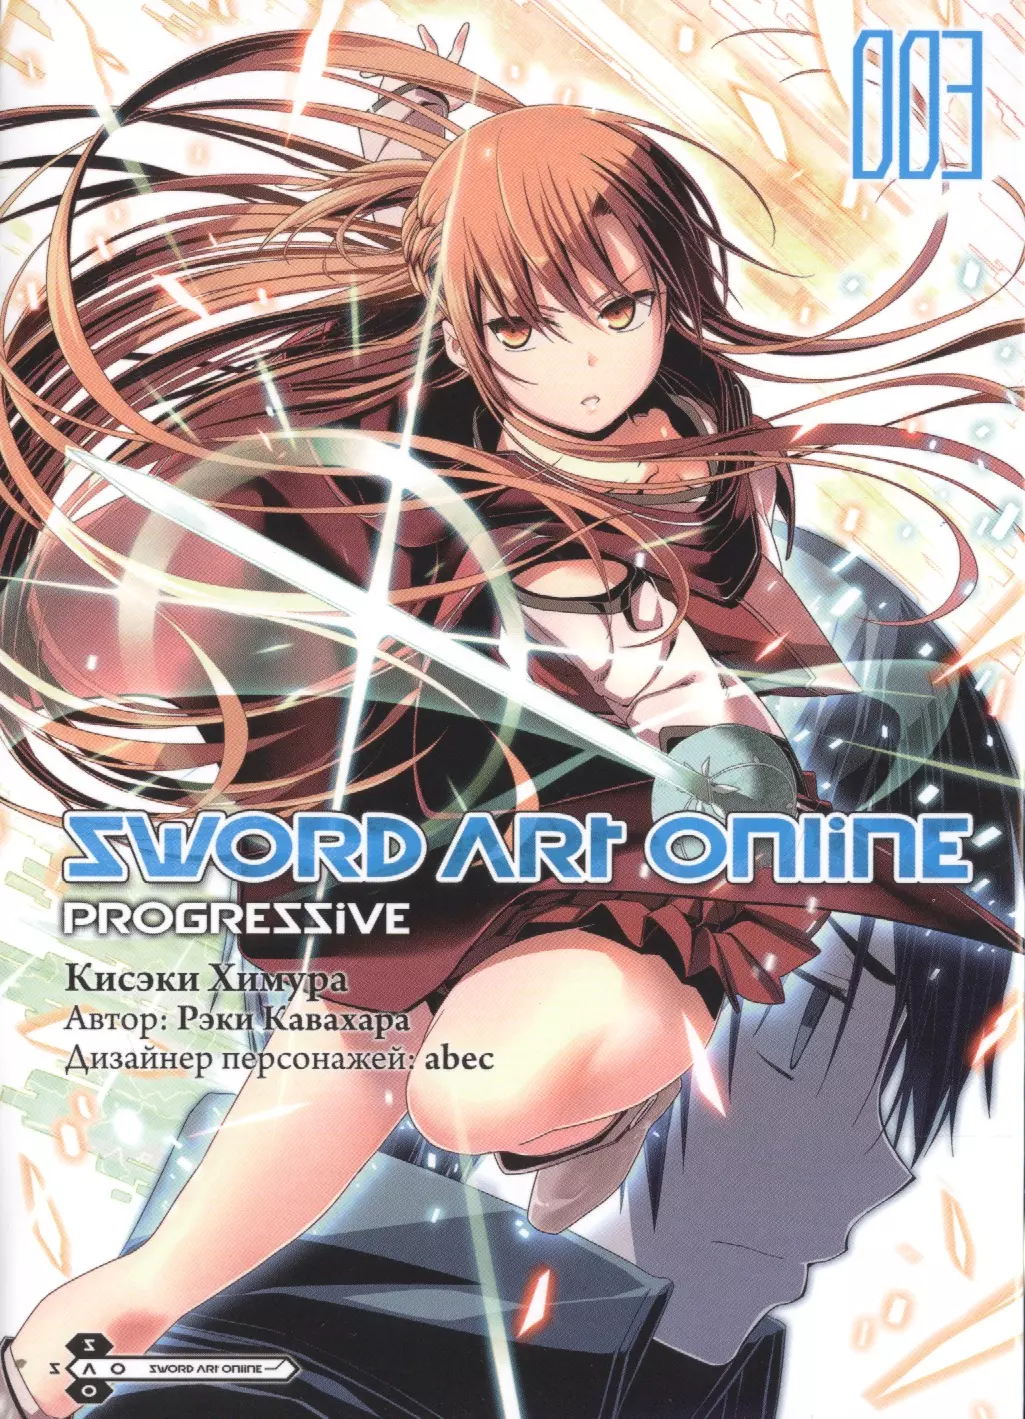 Sword Art Online: Progressive. Том 3 химура кисэки sword art online progressive манга том 4